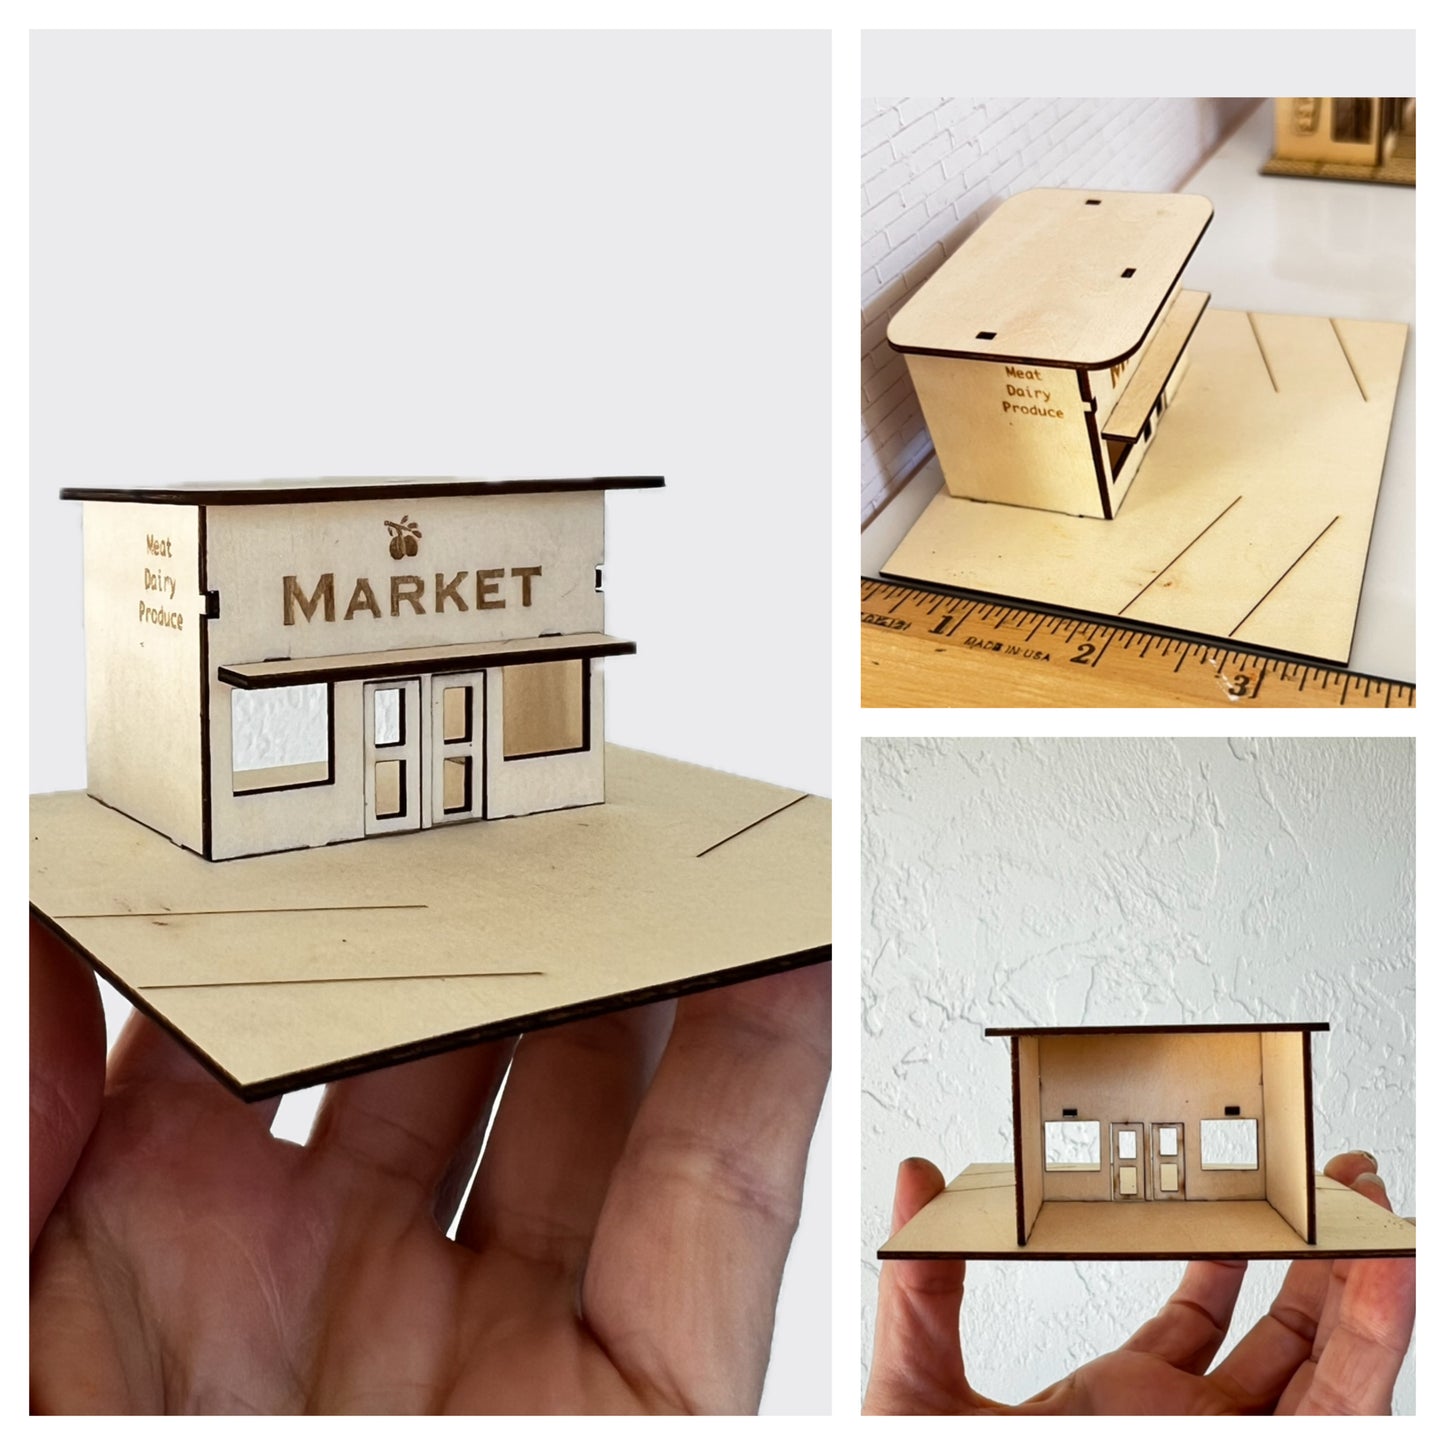 The Market, Mini Town Building Kits 1:144